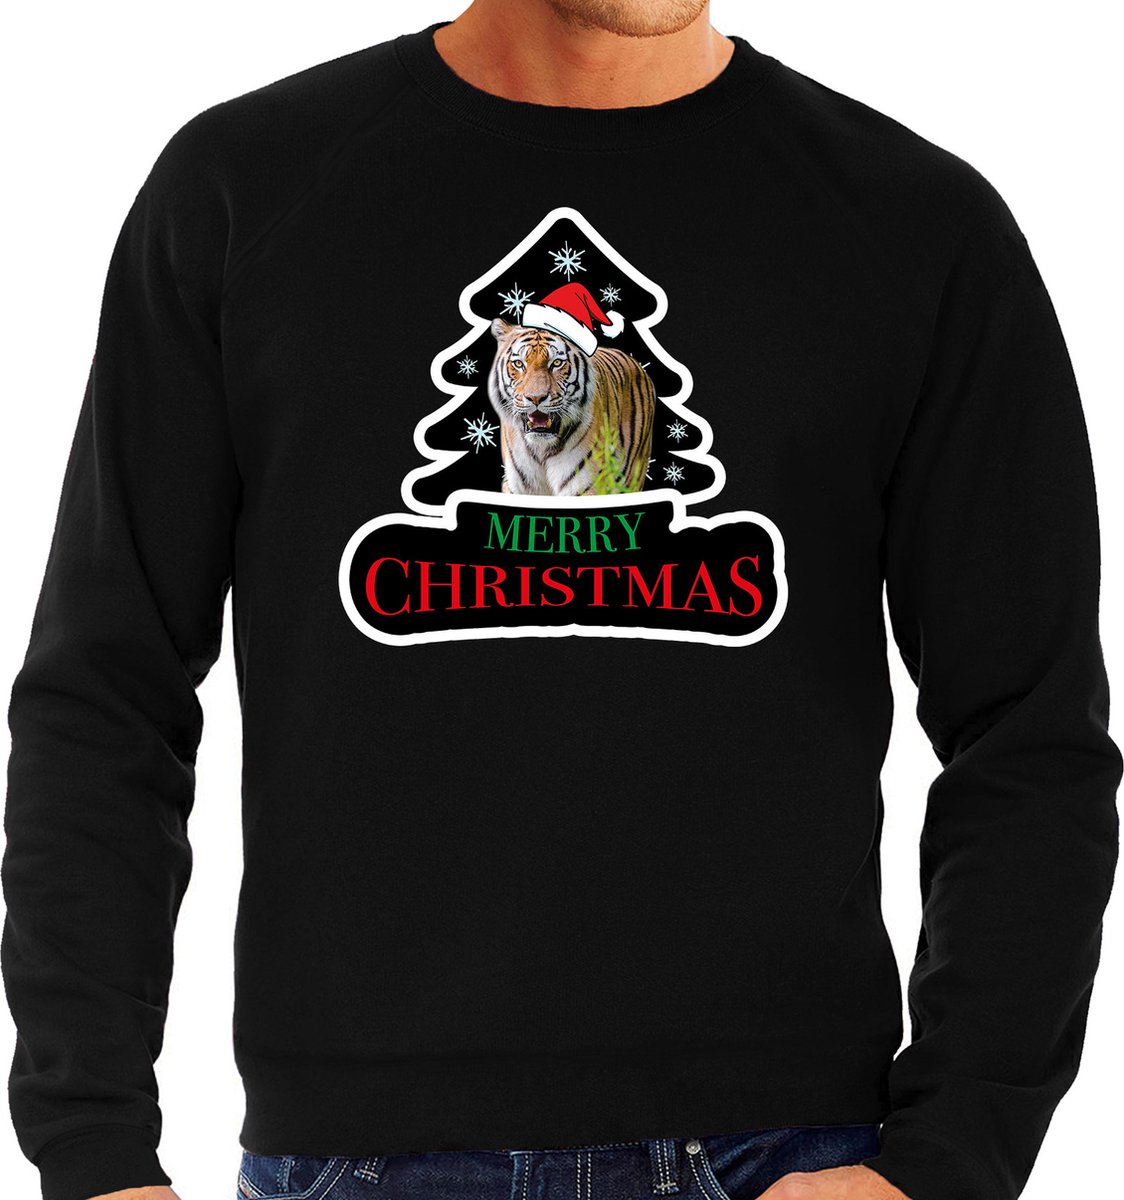 Dieren kersttrui tijger zwart heren - Foute tijgers kerstsweater - Kerst outfit dieren liefhebber XXL